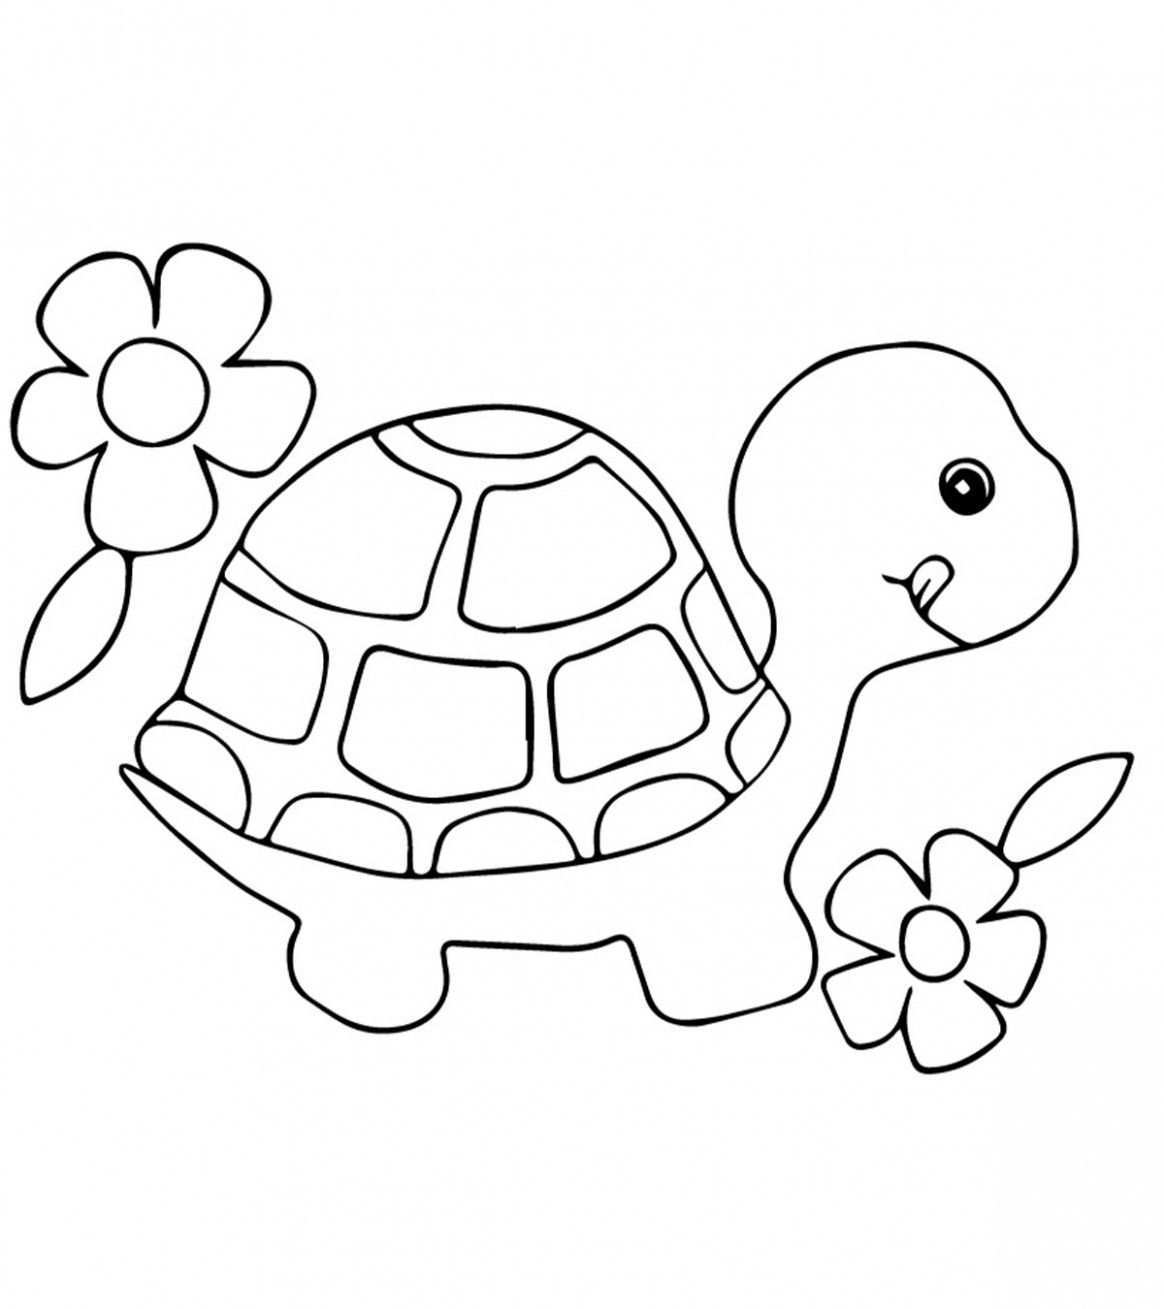 6 Turtle Colouring In In 2020 Malvorlagen Fur Kinder Schildkrote Zeichnung Malvorlagen Tiere